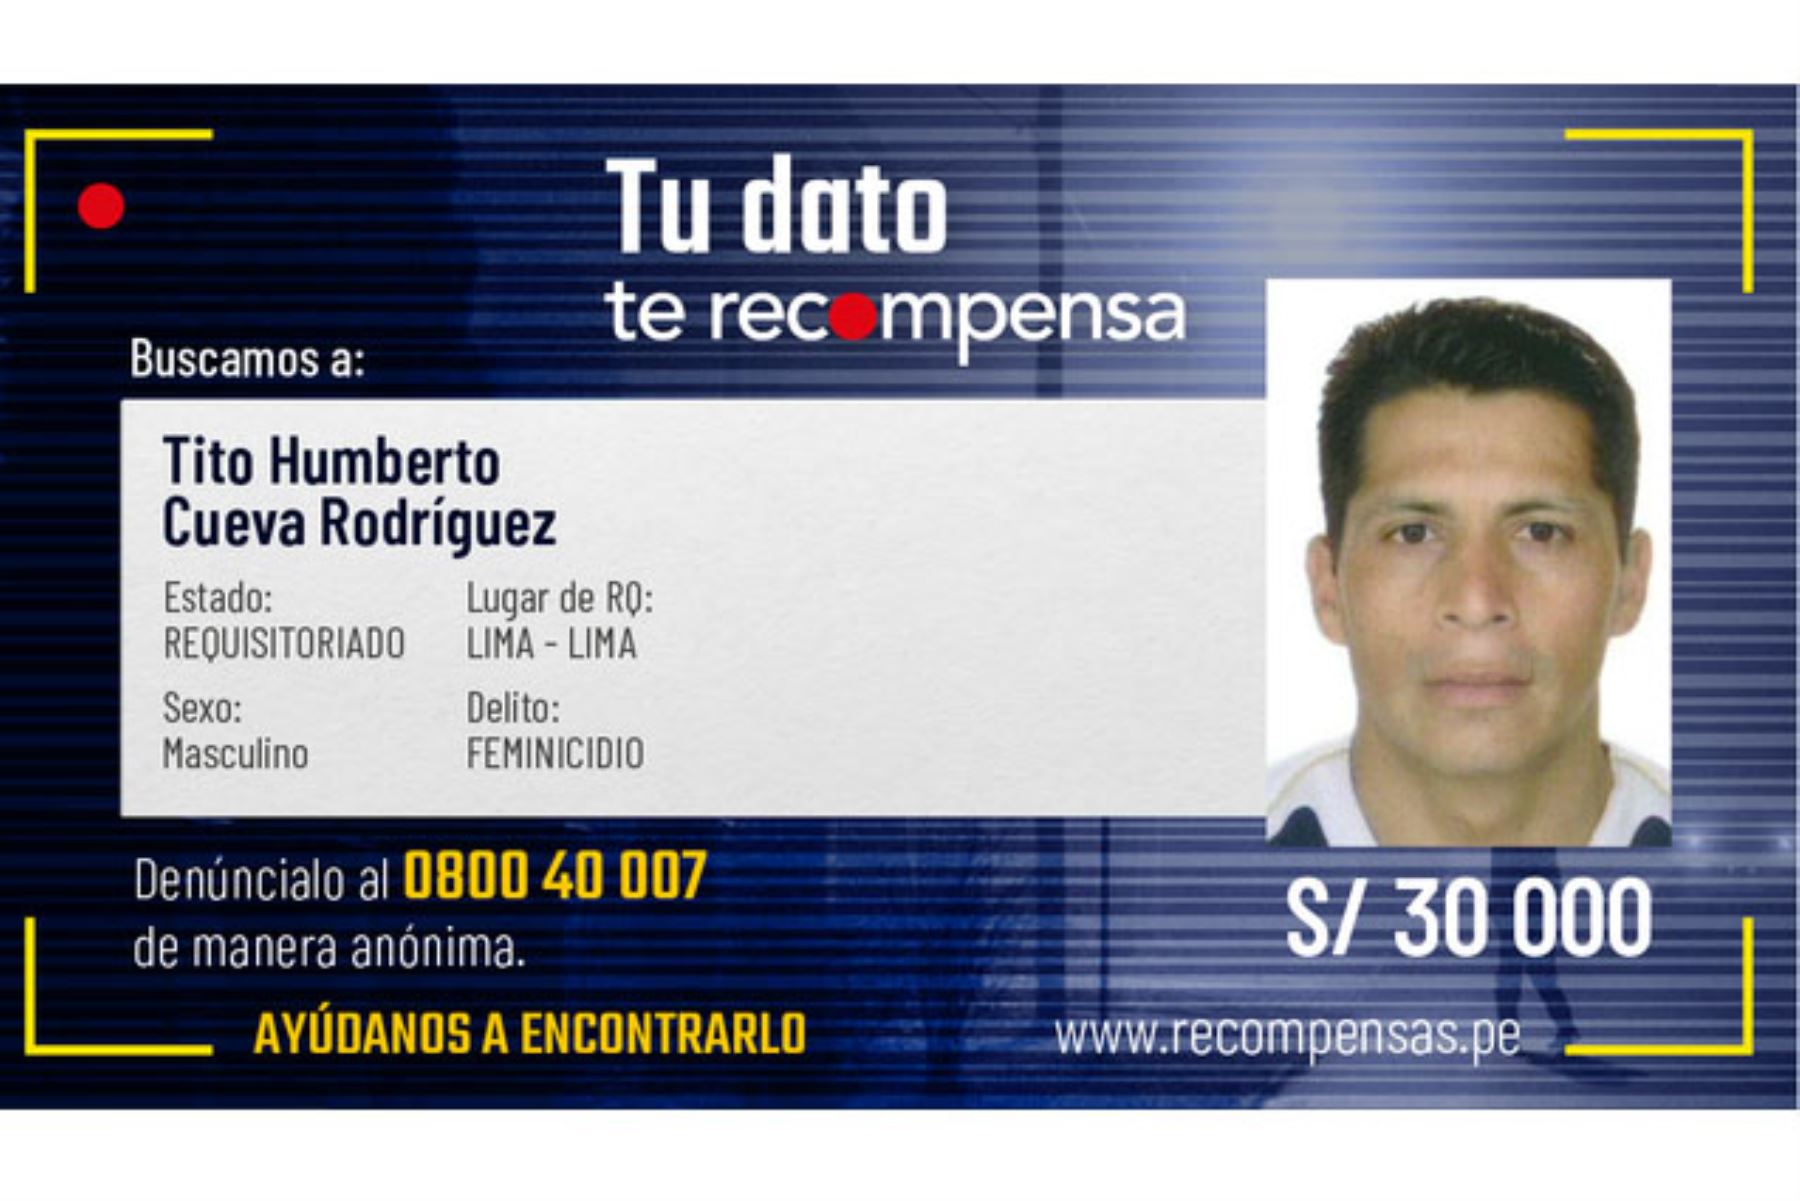 Tito Humberto Cueva Rodríguez asesinó a su pareja Lucía Apaéstegui, ahorcándola con una correa dentro de un inmueble, en el distrito de San Martín de Porres, en mayo de 2012. ANDINA/ Mininter